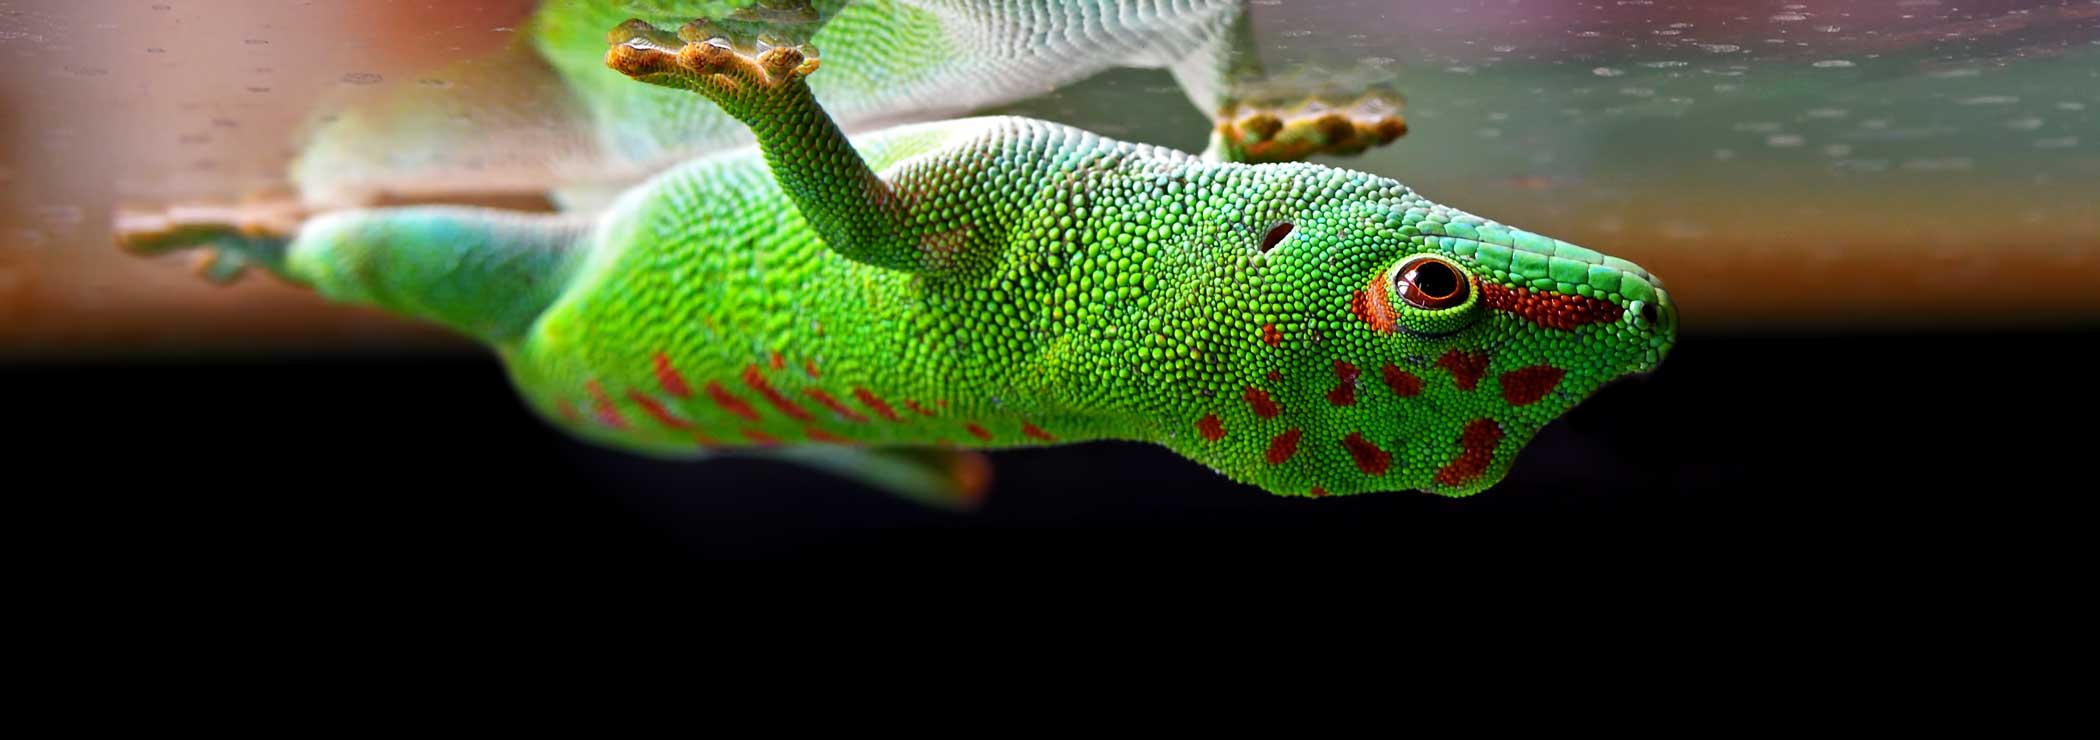 Ein Madagaskar-Taggecko haftet an einer Glasscheibe